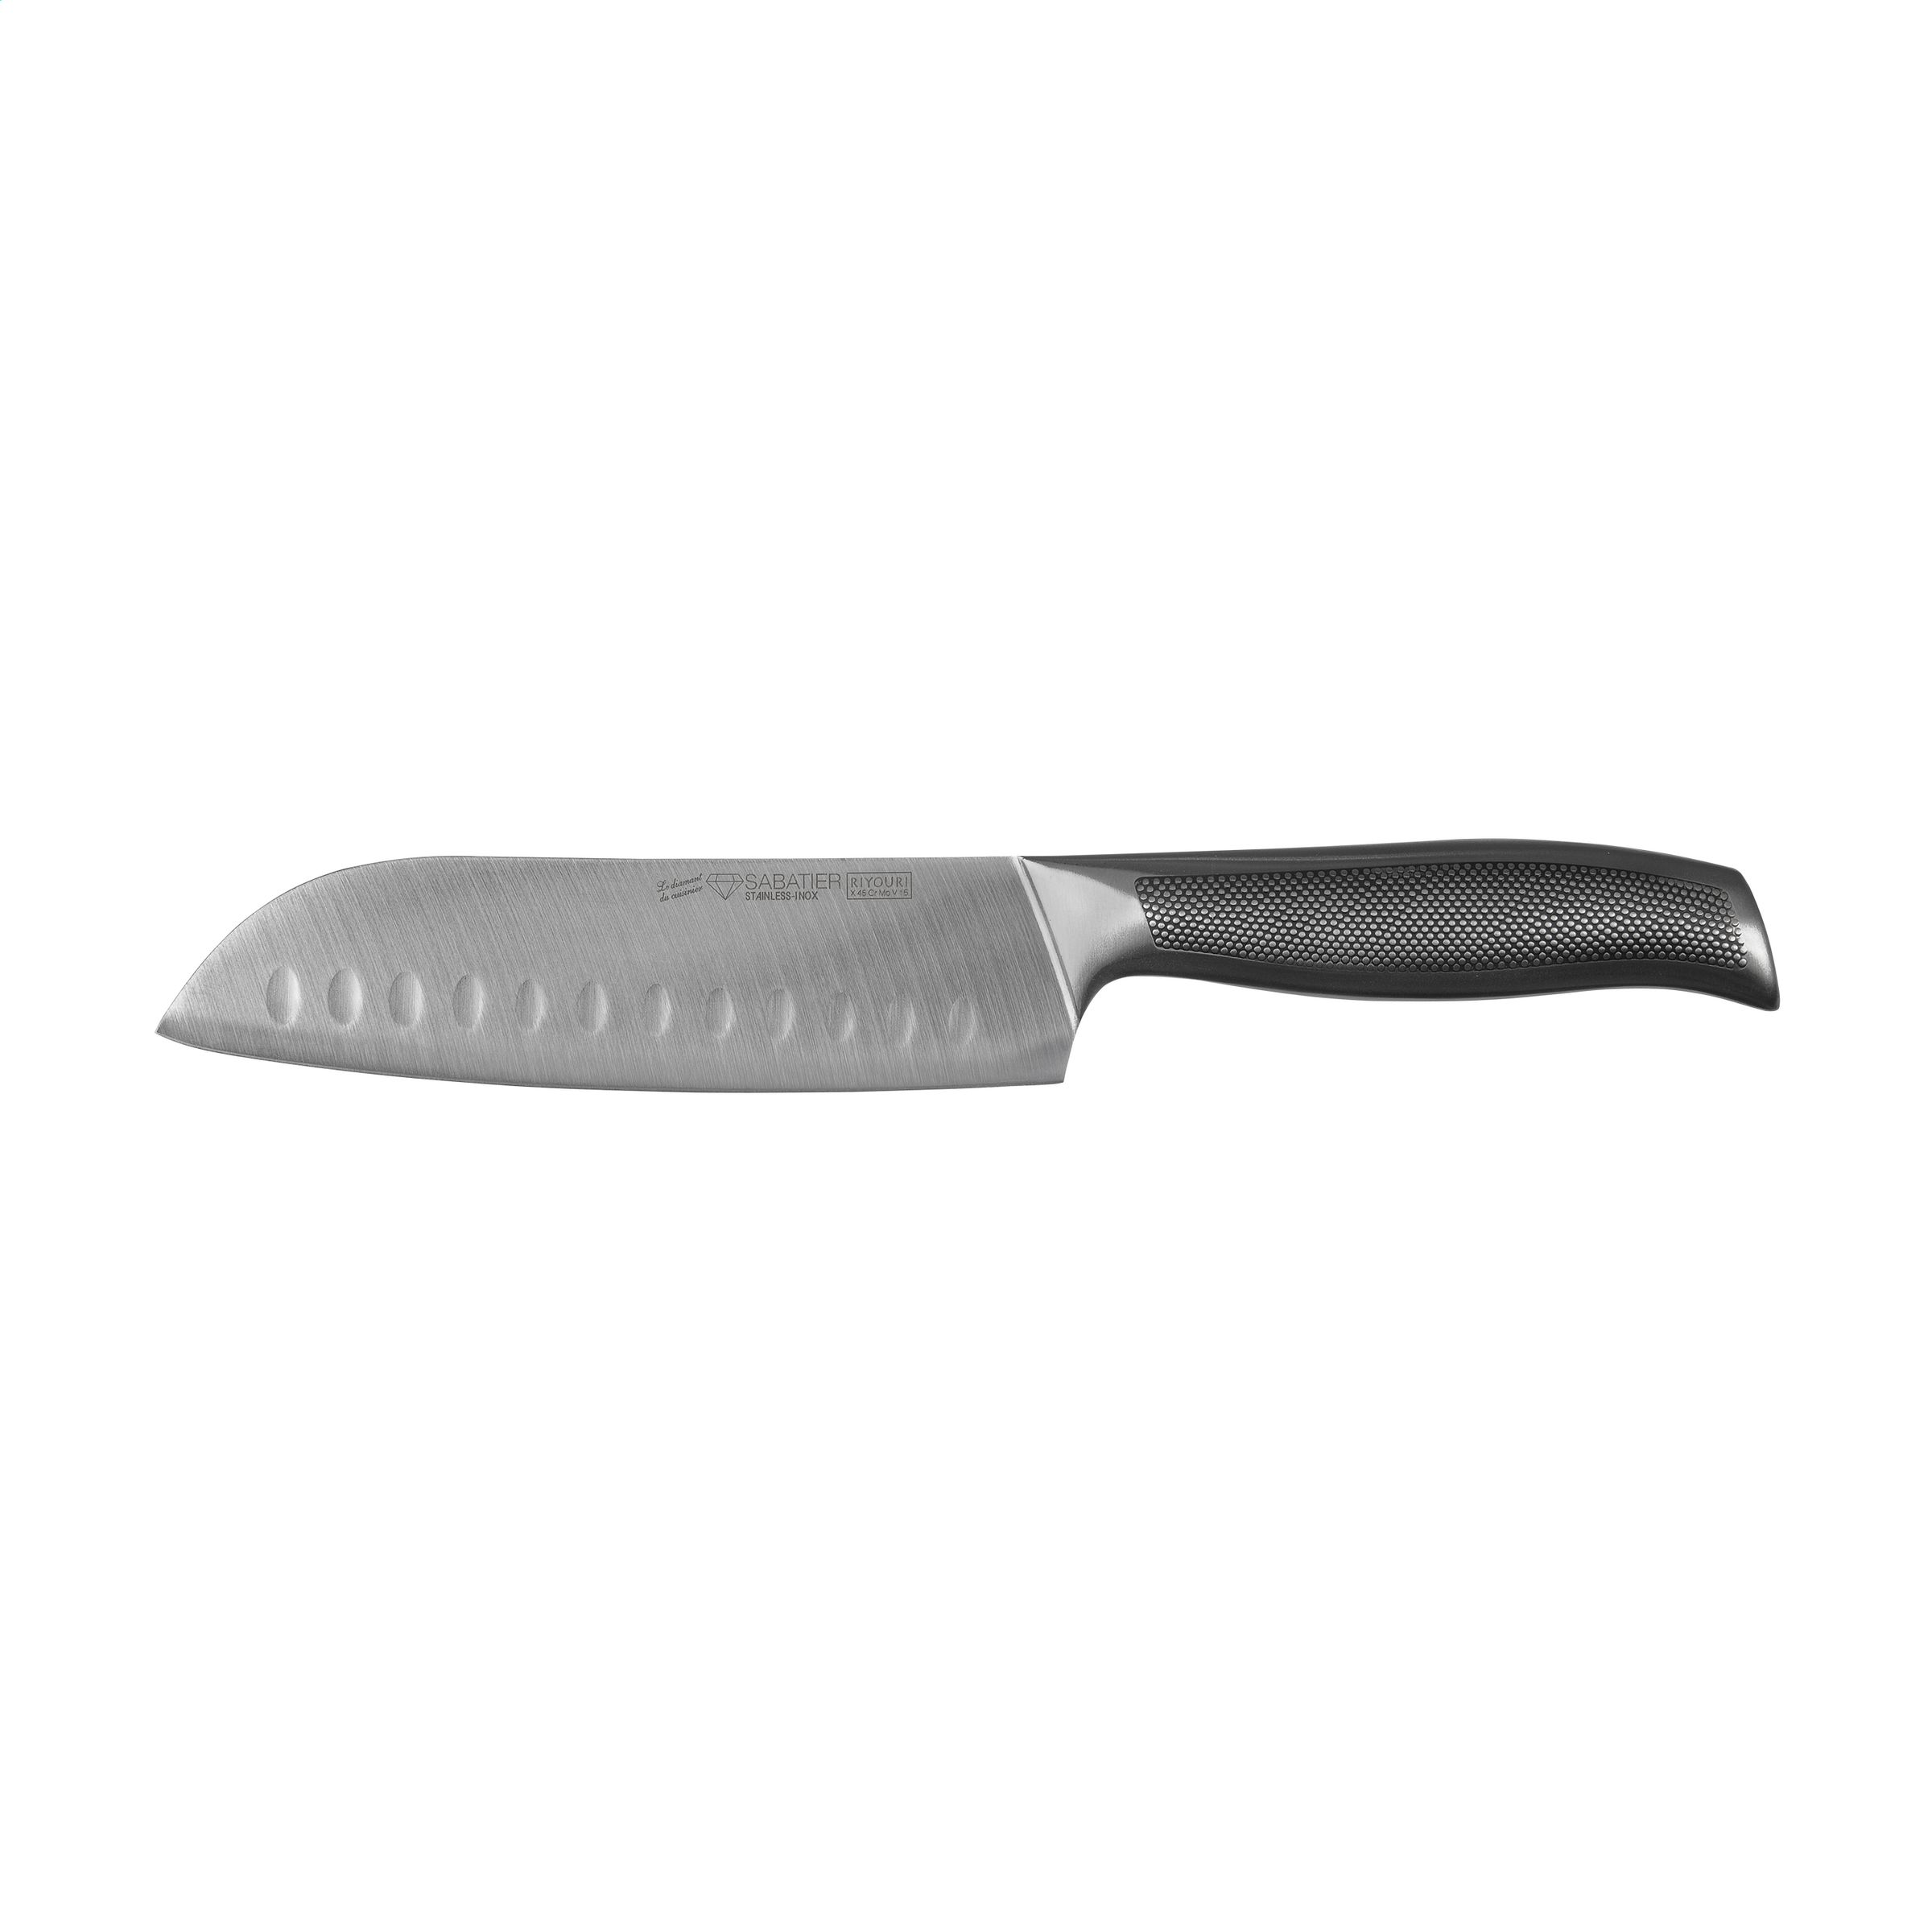 Un cuchillo multiusos de Asia con una hoja de 17 cm de ancho - Little Snoring - Banyalbufar